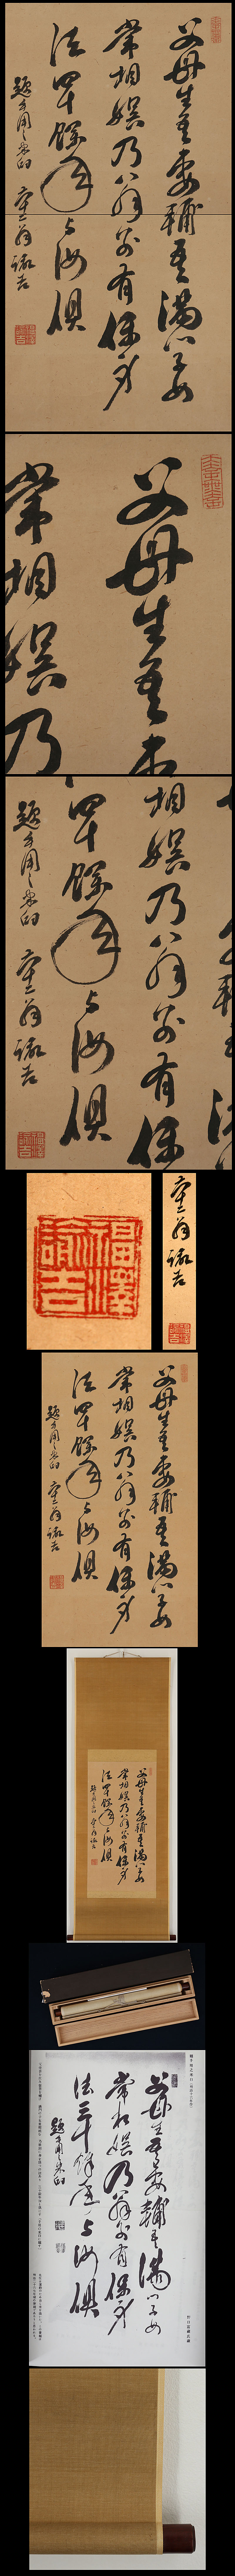 福沢諭吉 題手用之米臼詩 | 古美術品・中国書画の買取・査定や掛軸の